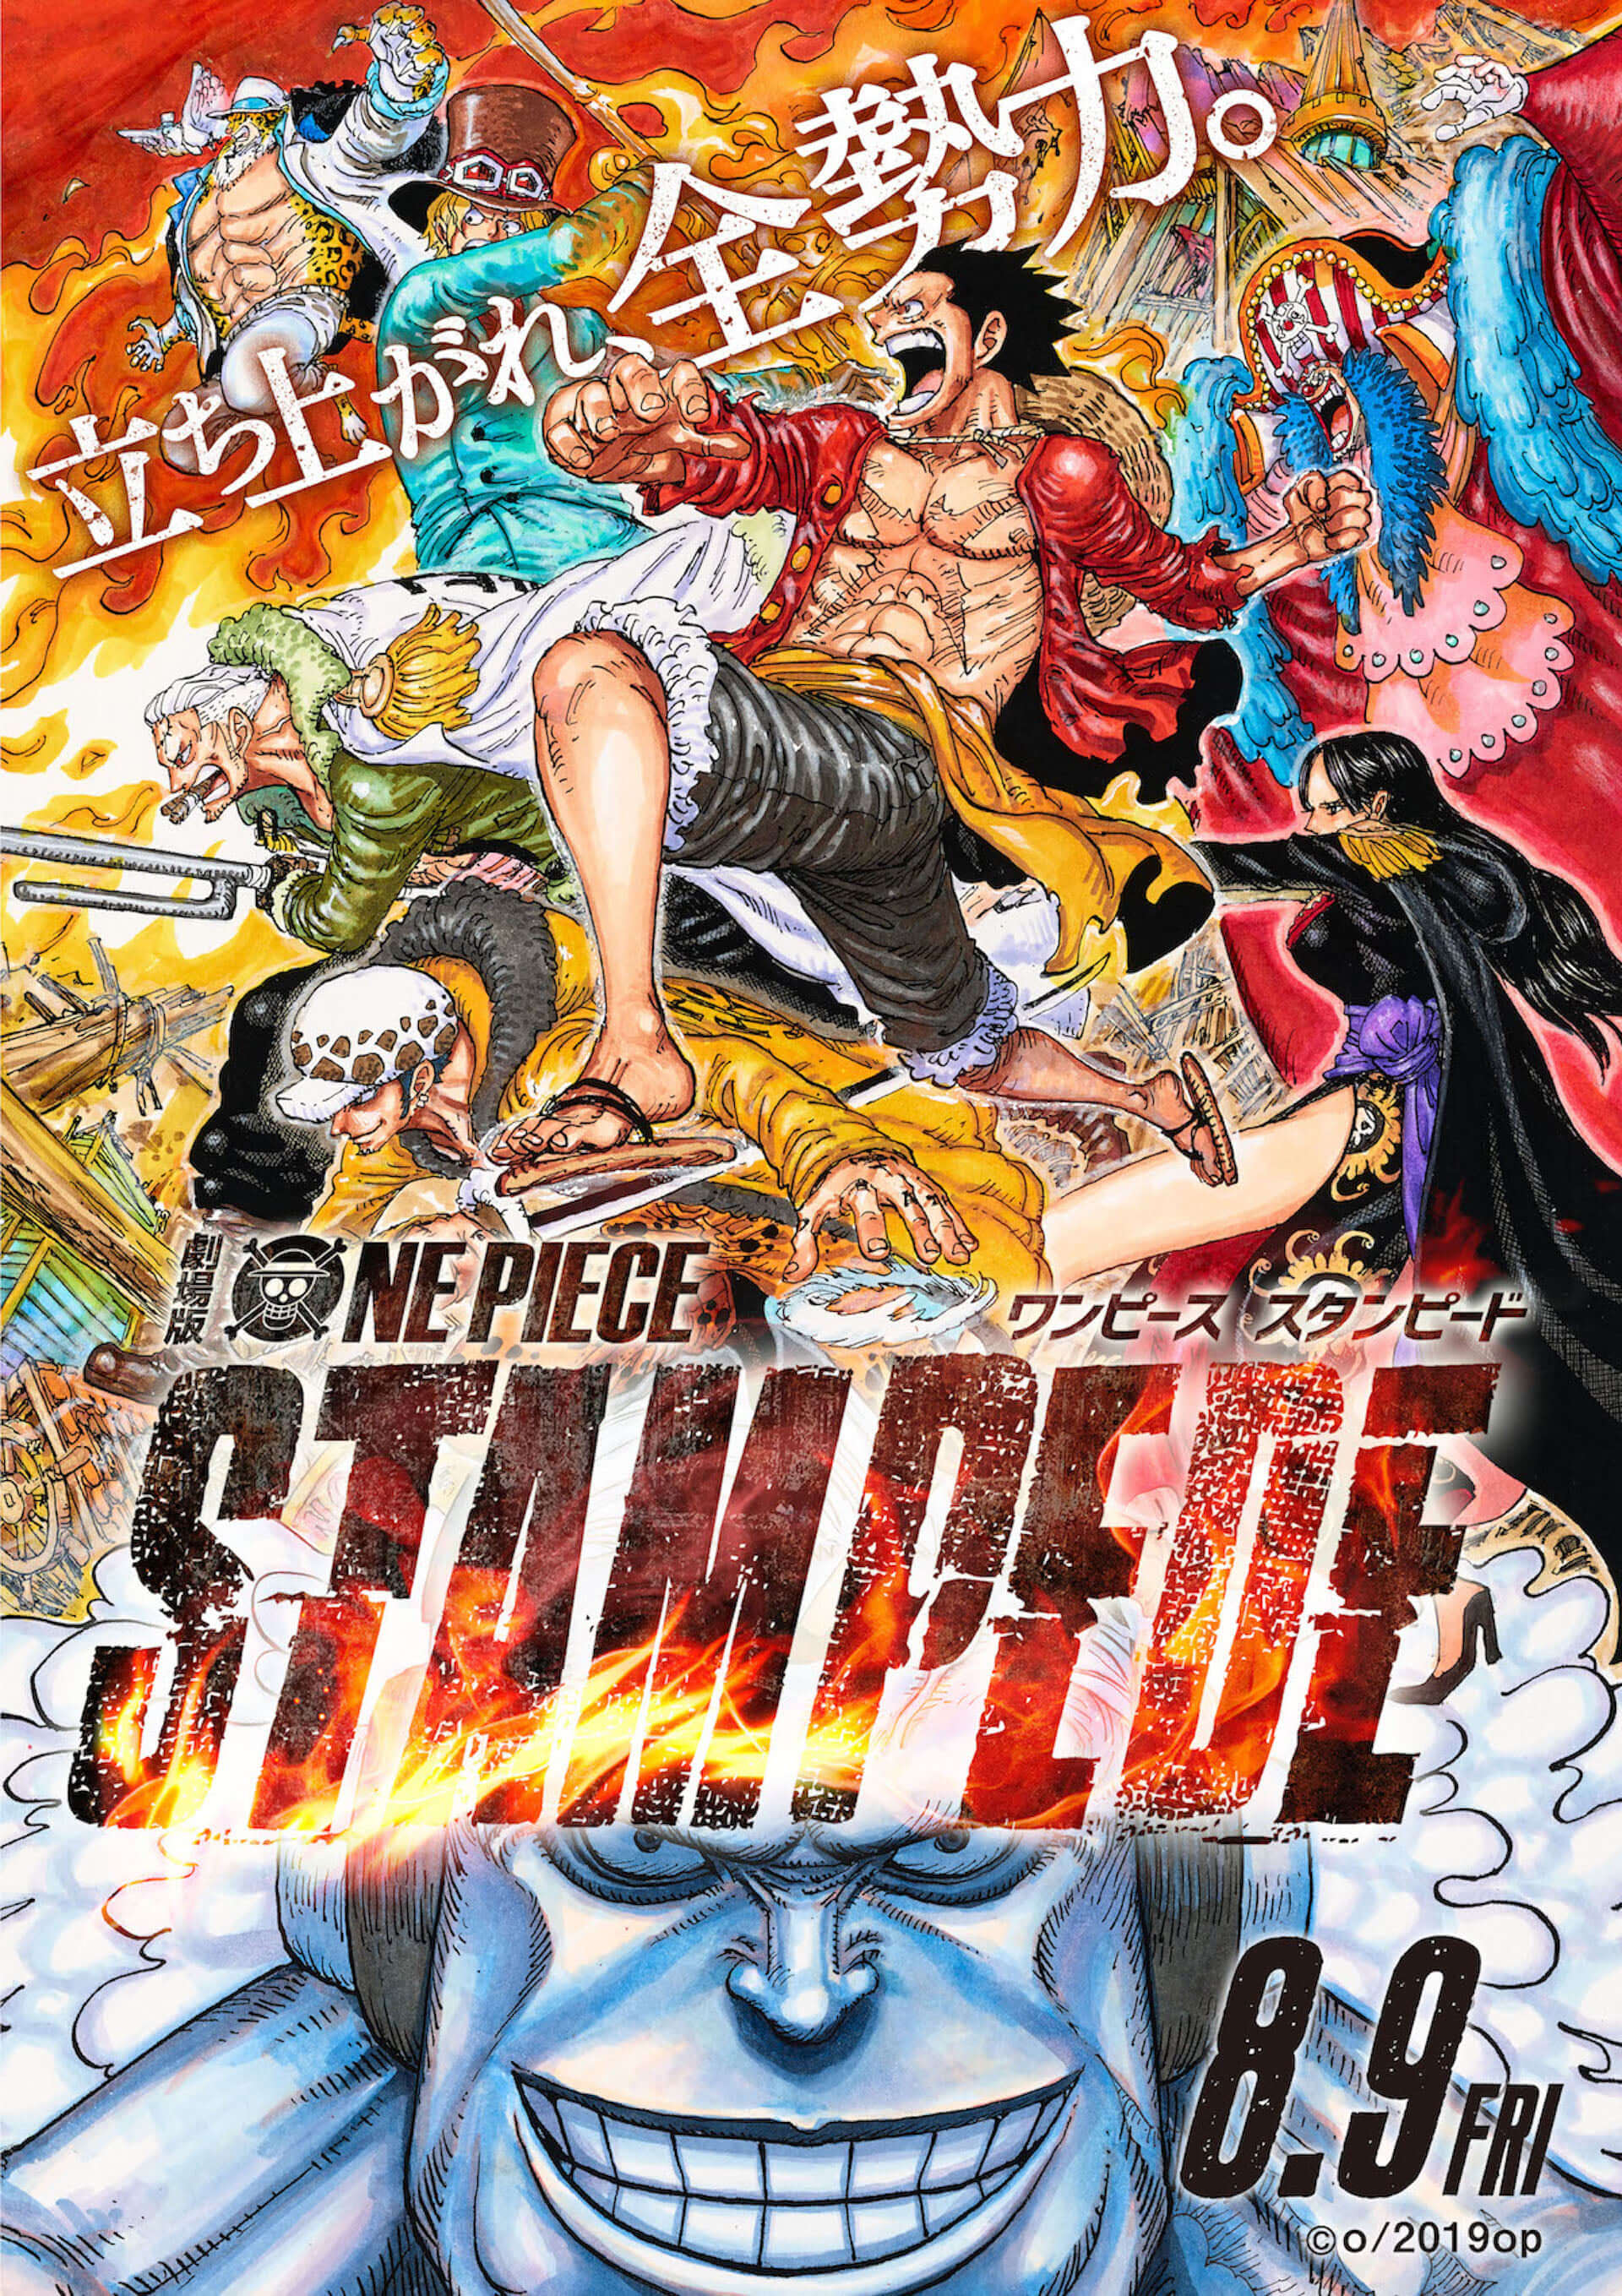 ユースケ サンタマリアがone Pieceへの異常な愛を語る Tohoシネマズマガジン特別号が7月5日より発行開始 Qetic